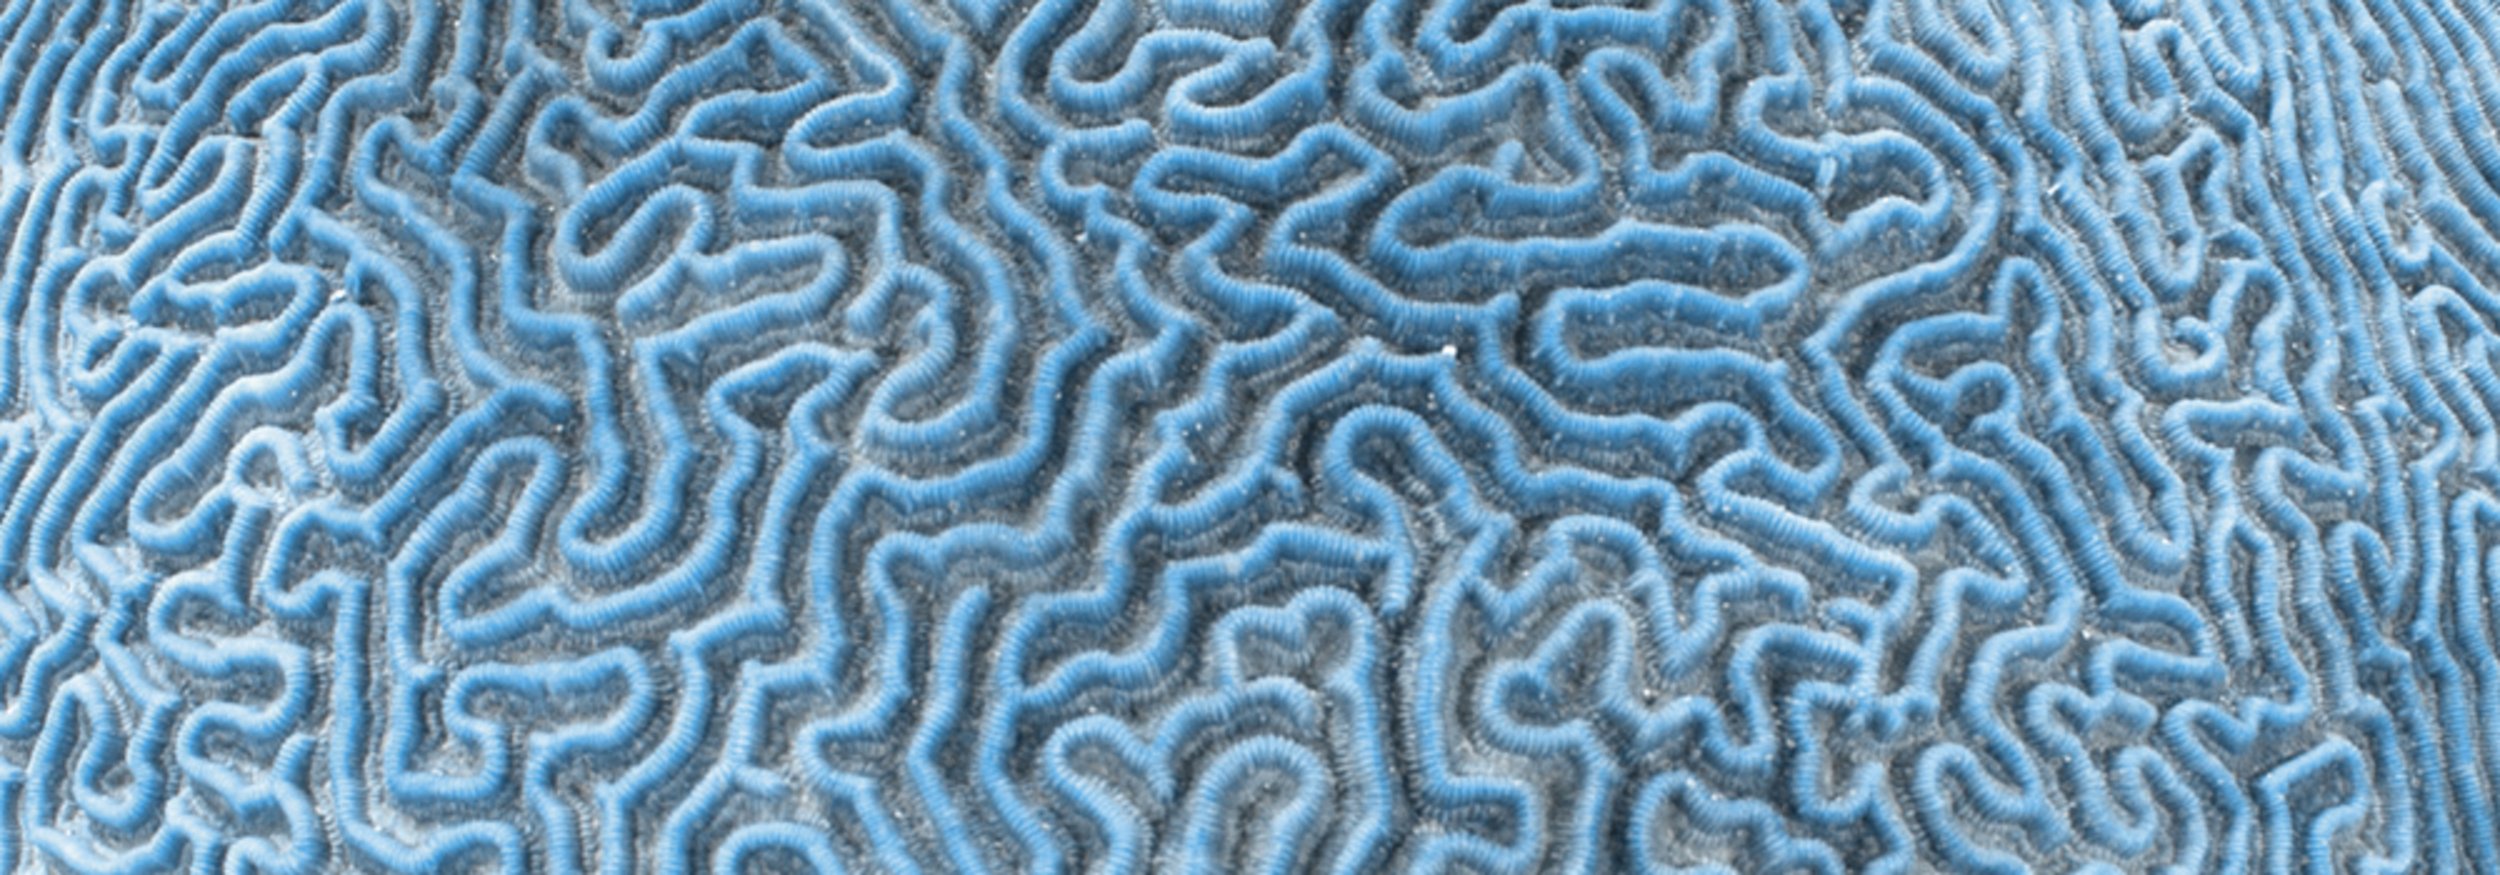 [Translate to Französisch:] Titelbild der Methodenseite, Detailansicht einer Koralle